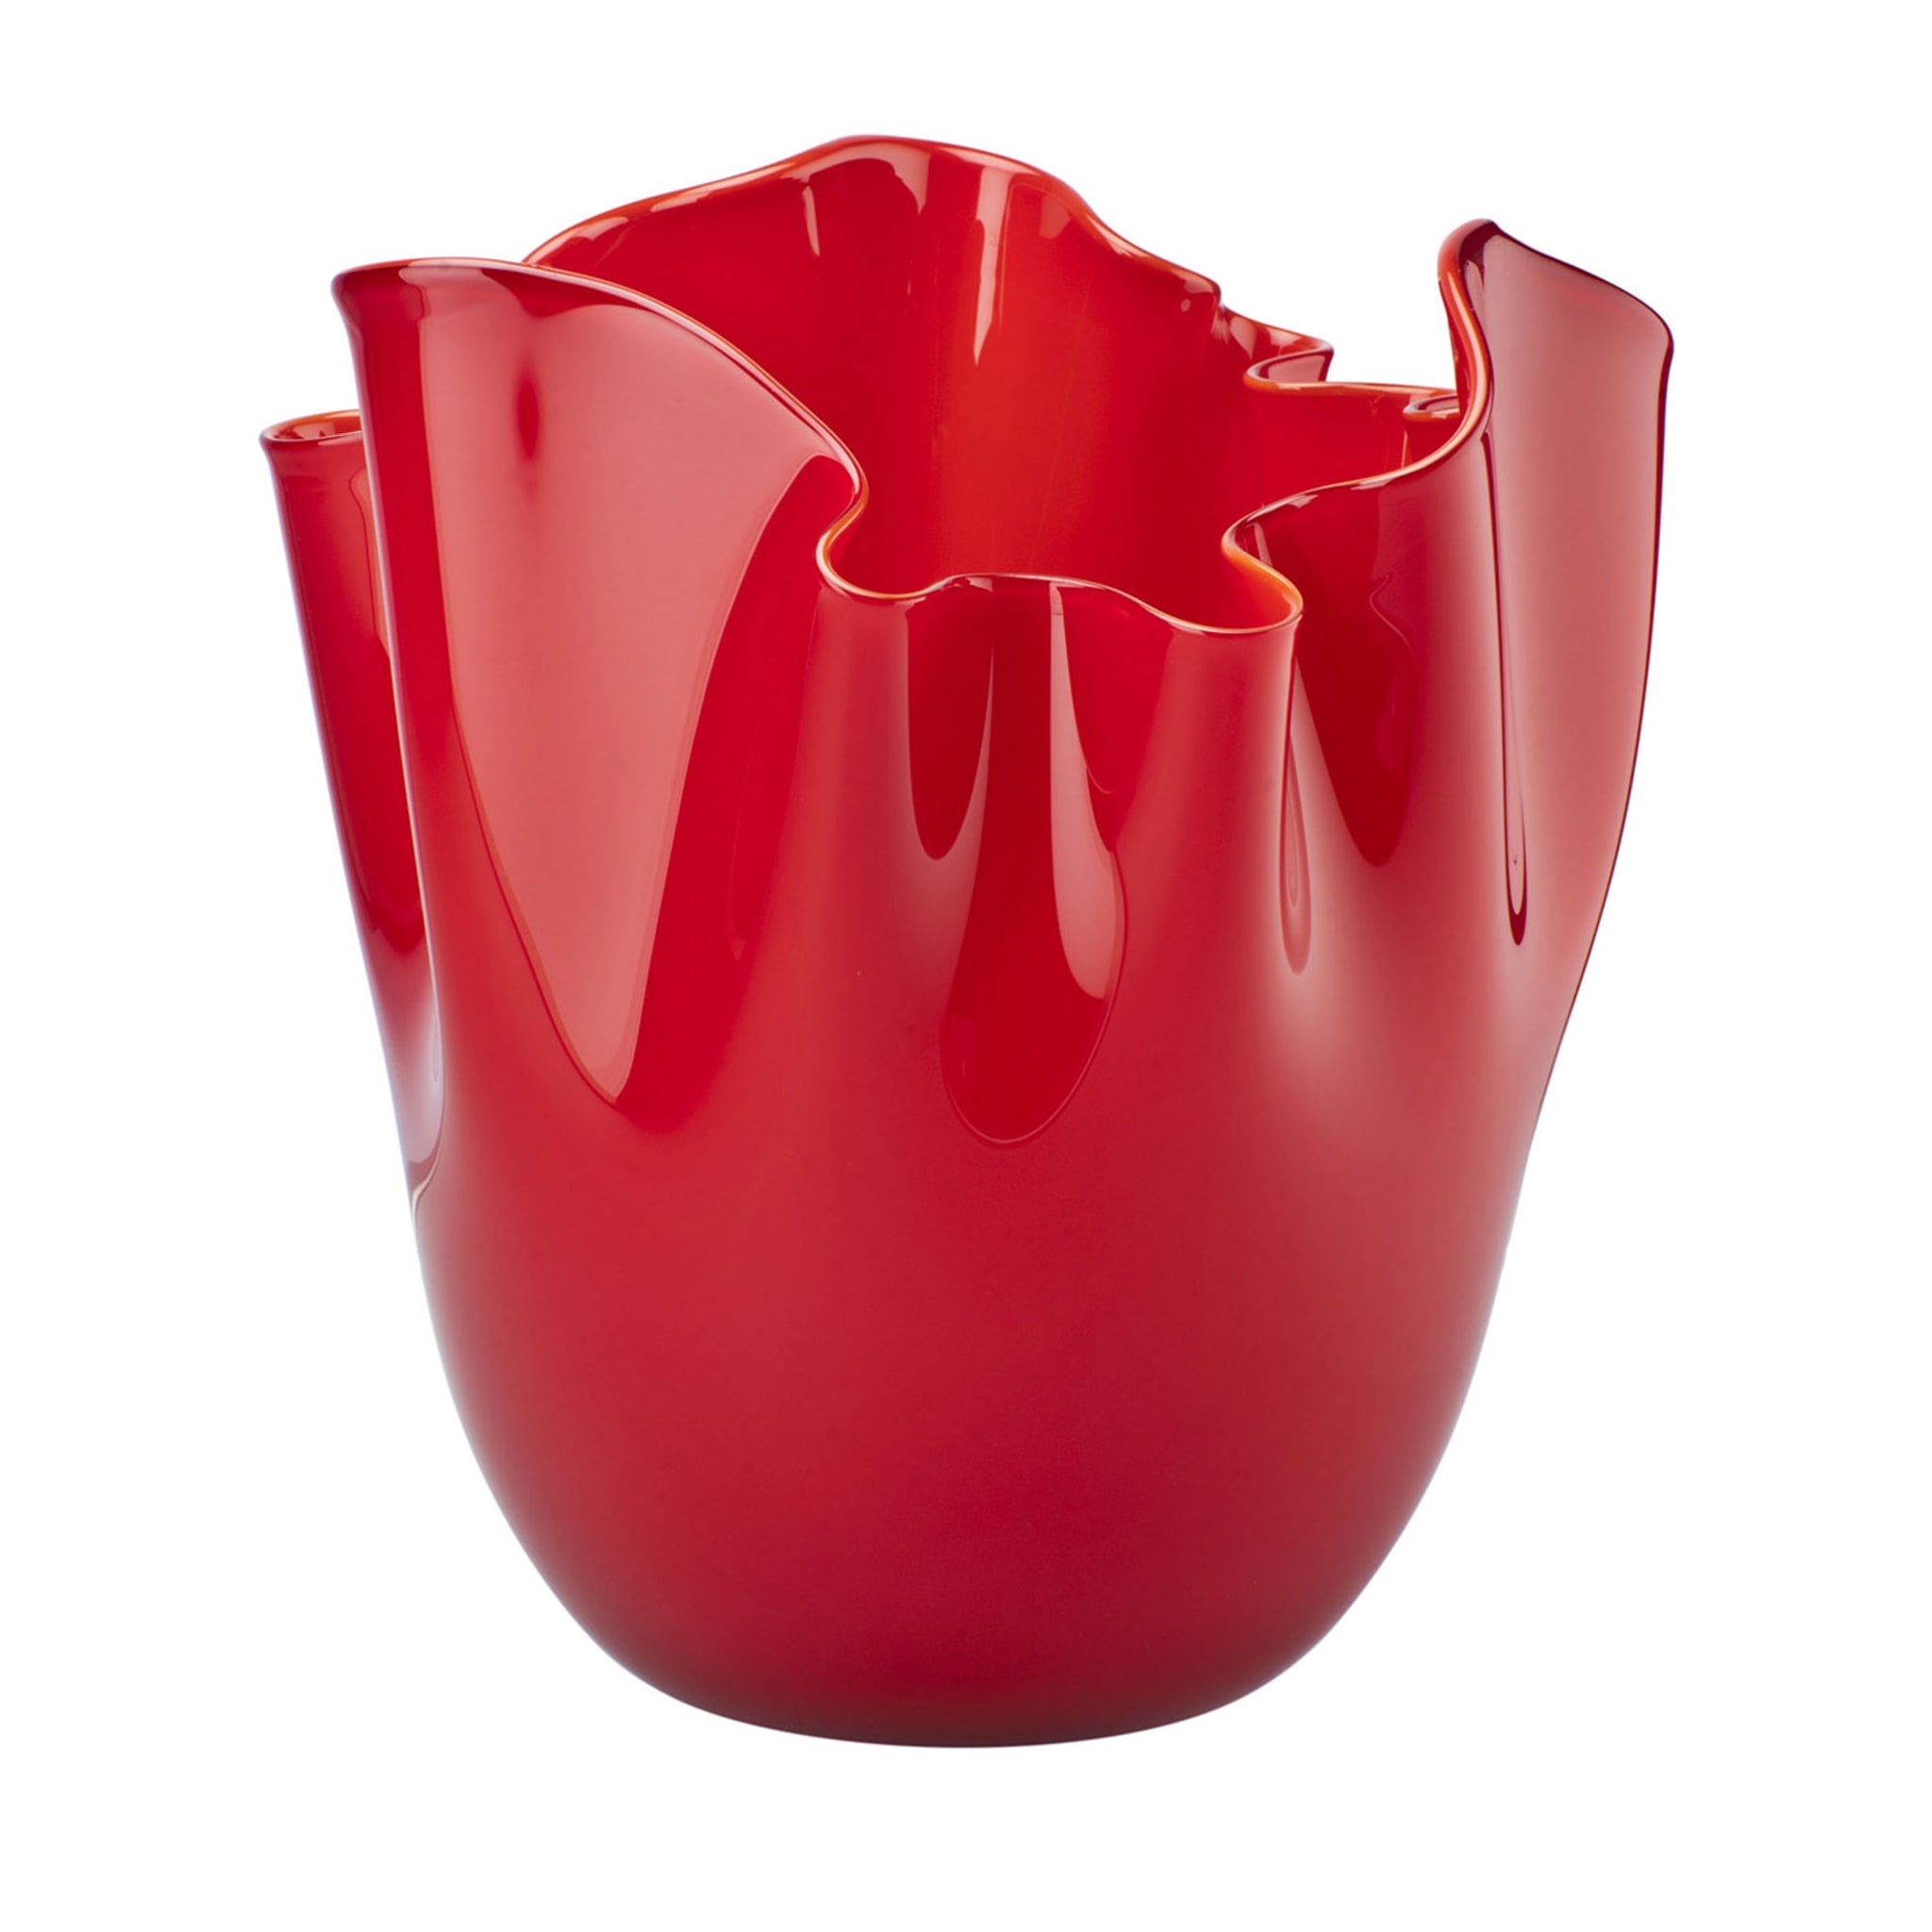 Fazzoletto Red Vase by Paolo Venini and Fulvio Bianconi - Main view